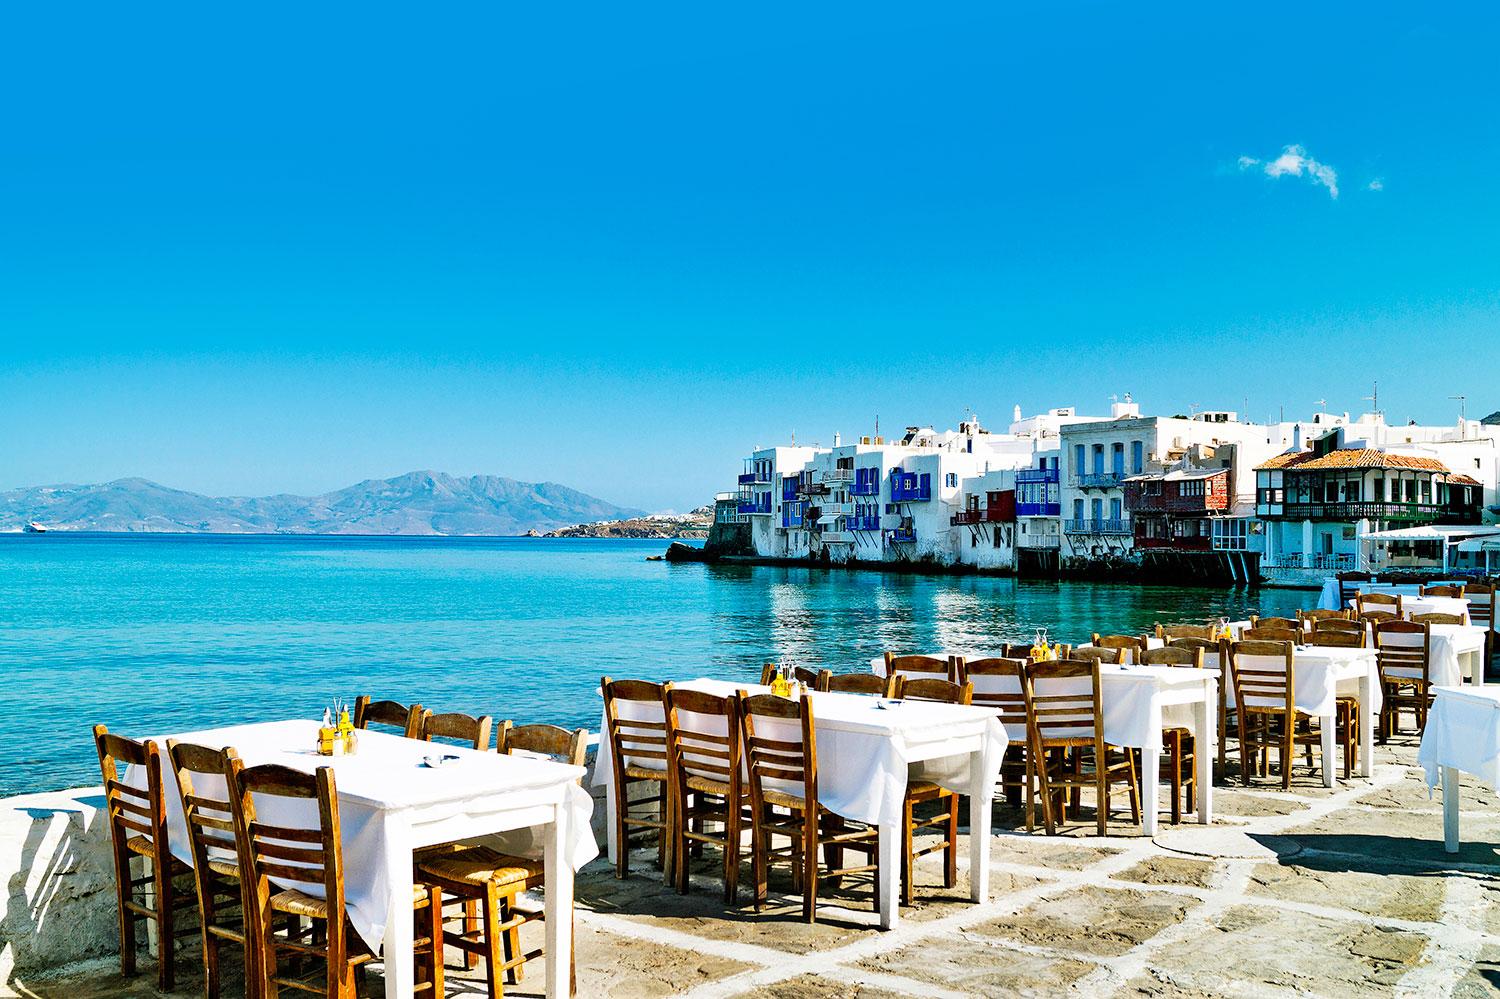 Mmm…Middag på Mykonos. Kan du se dig själv sitta vid de här borden och vänta på en grekiska bondsallad med solmogna tomater?